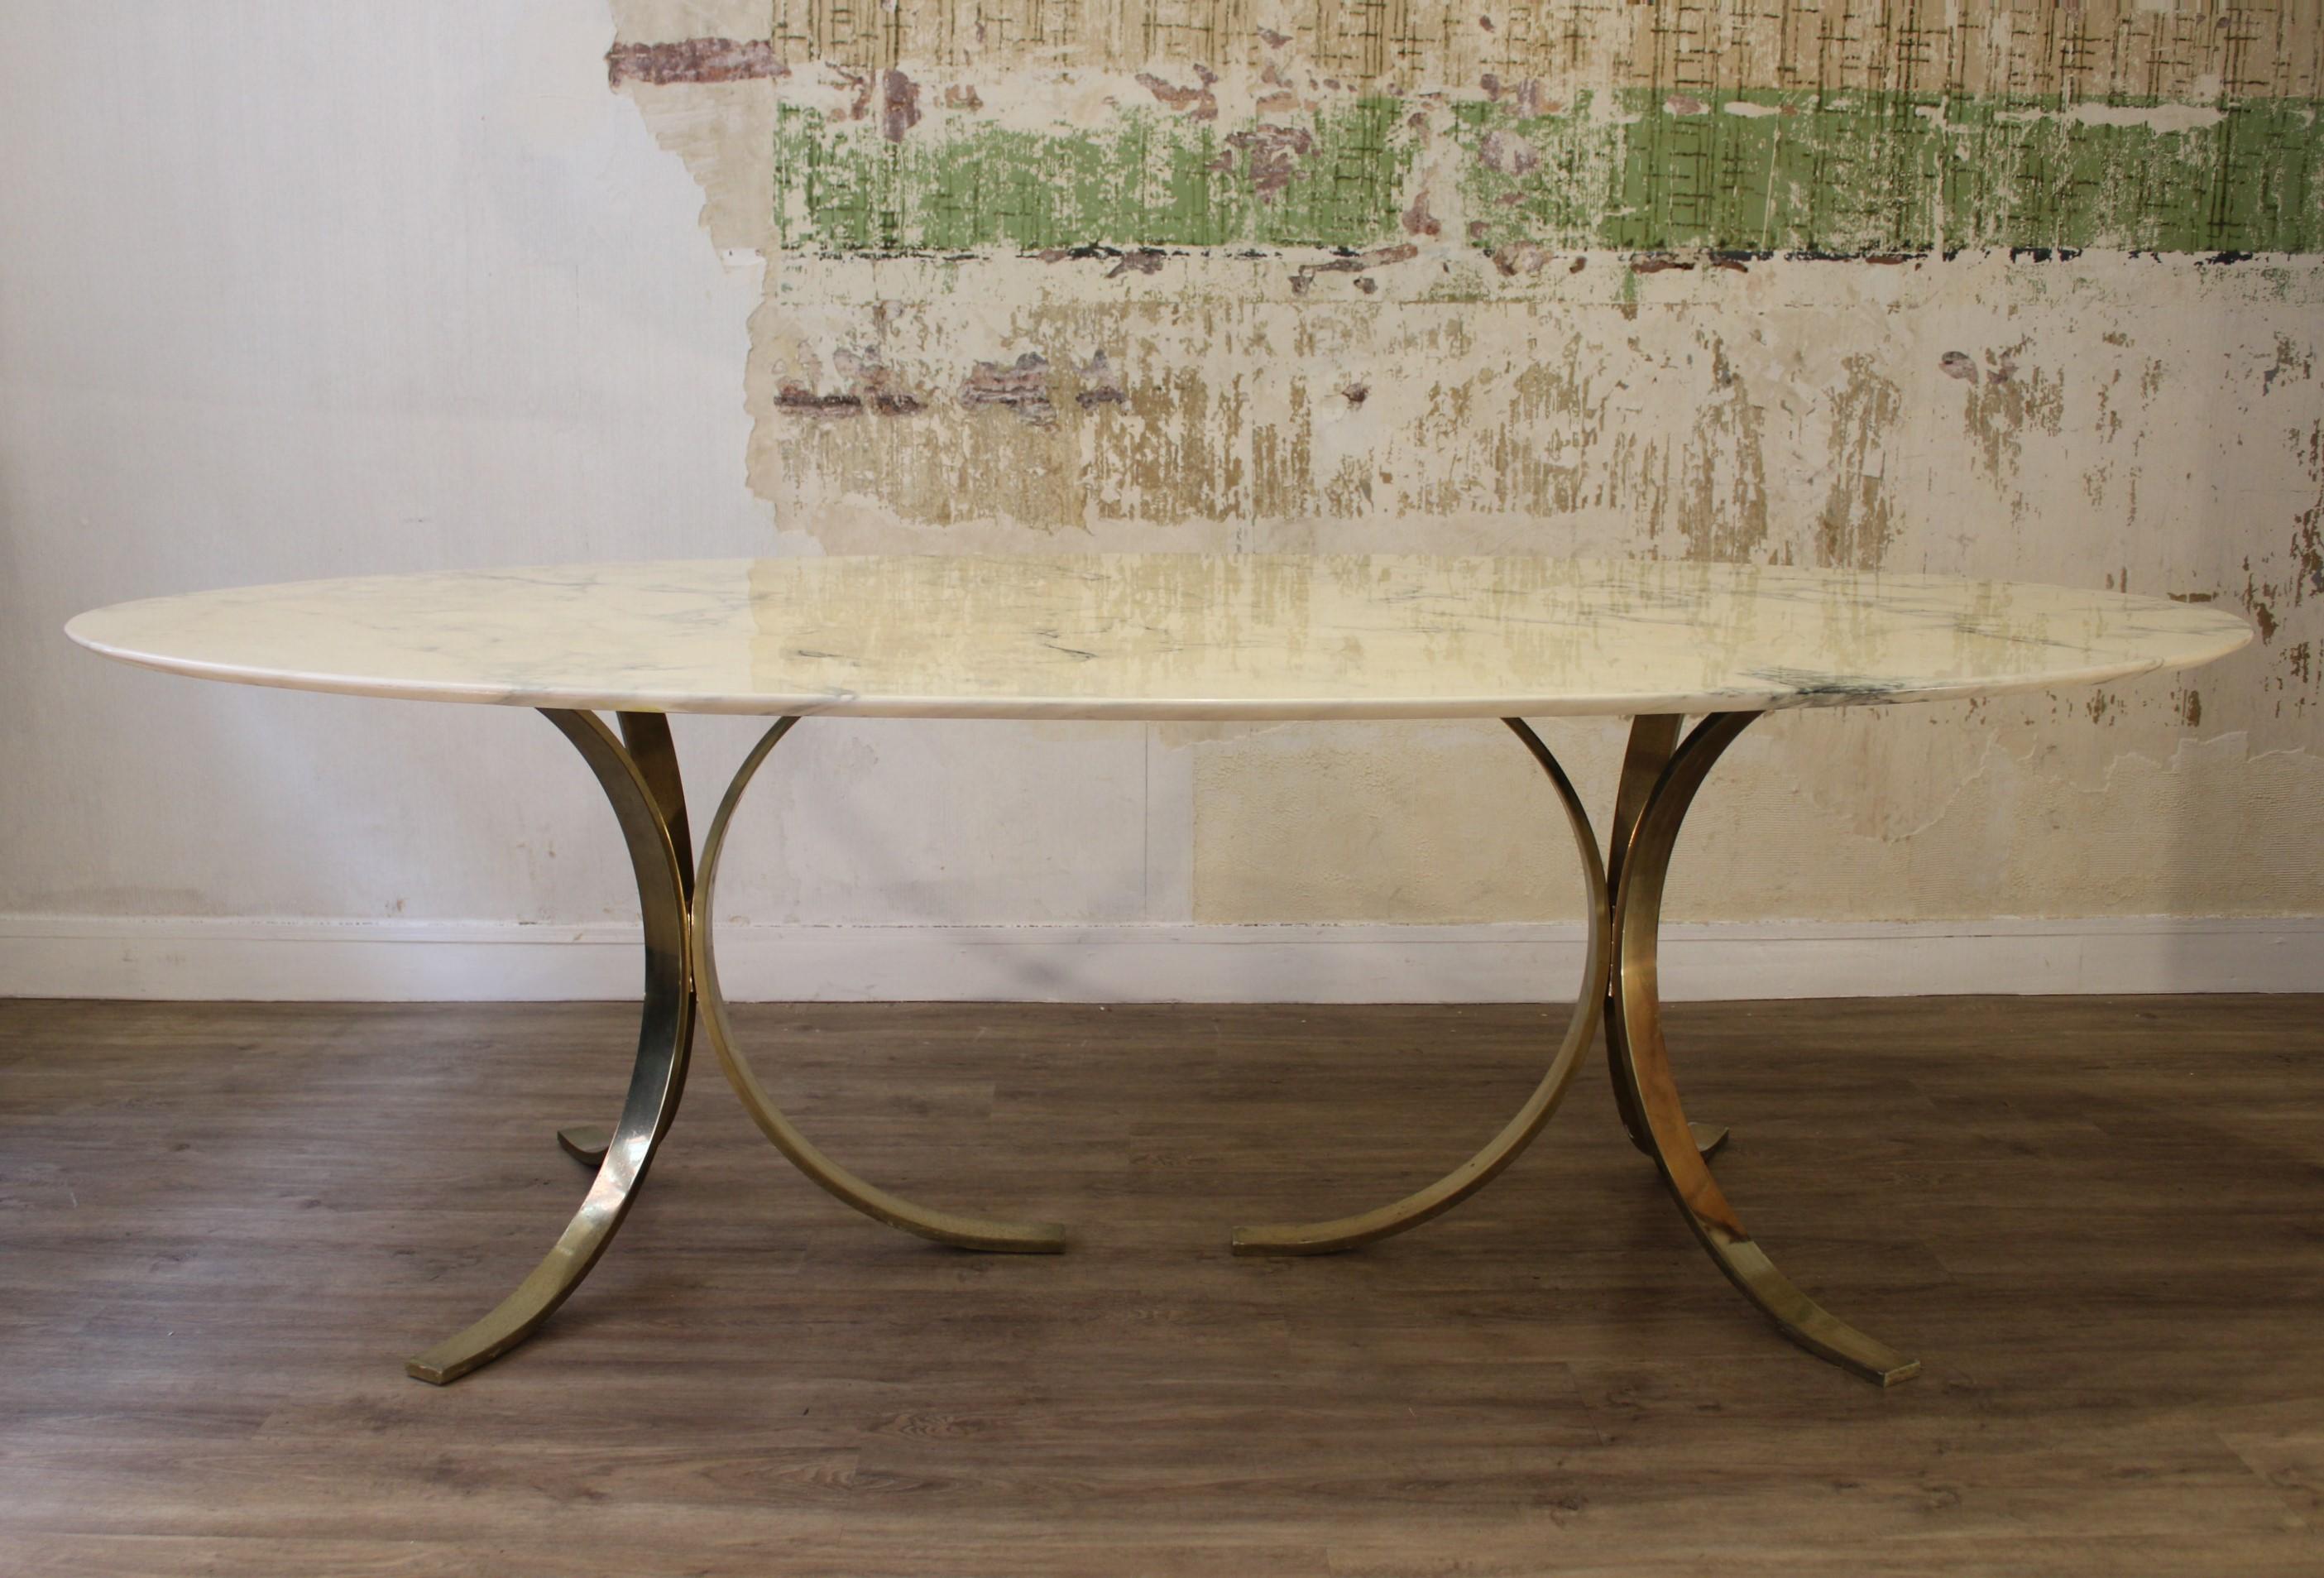 Oval dinning table by Osvaldo Borsani 
Calacatta marble, golden steel base
Italy 20th century